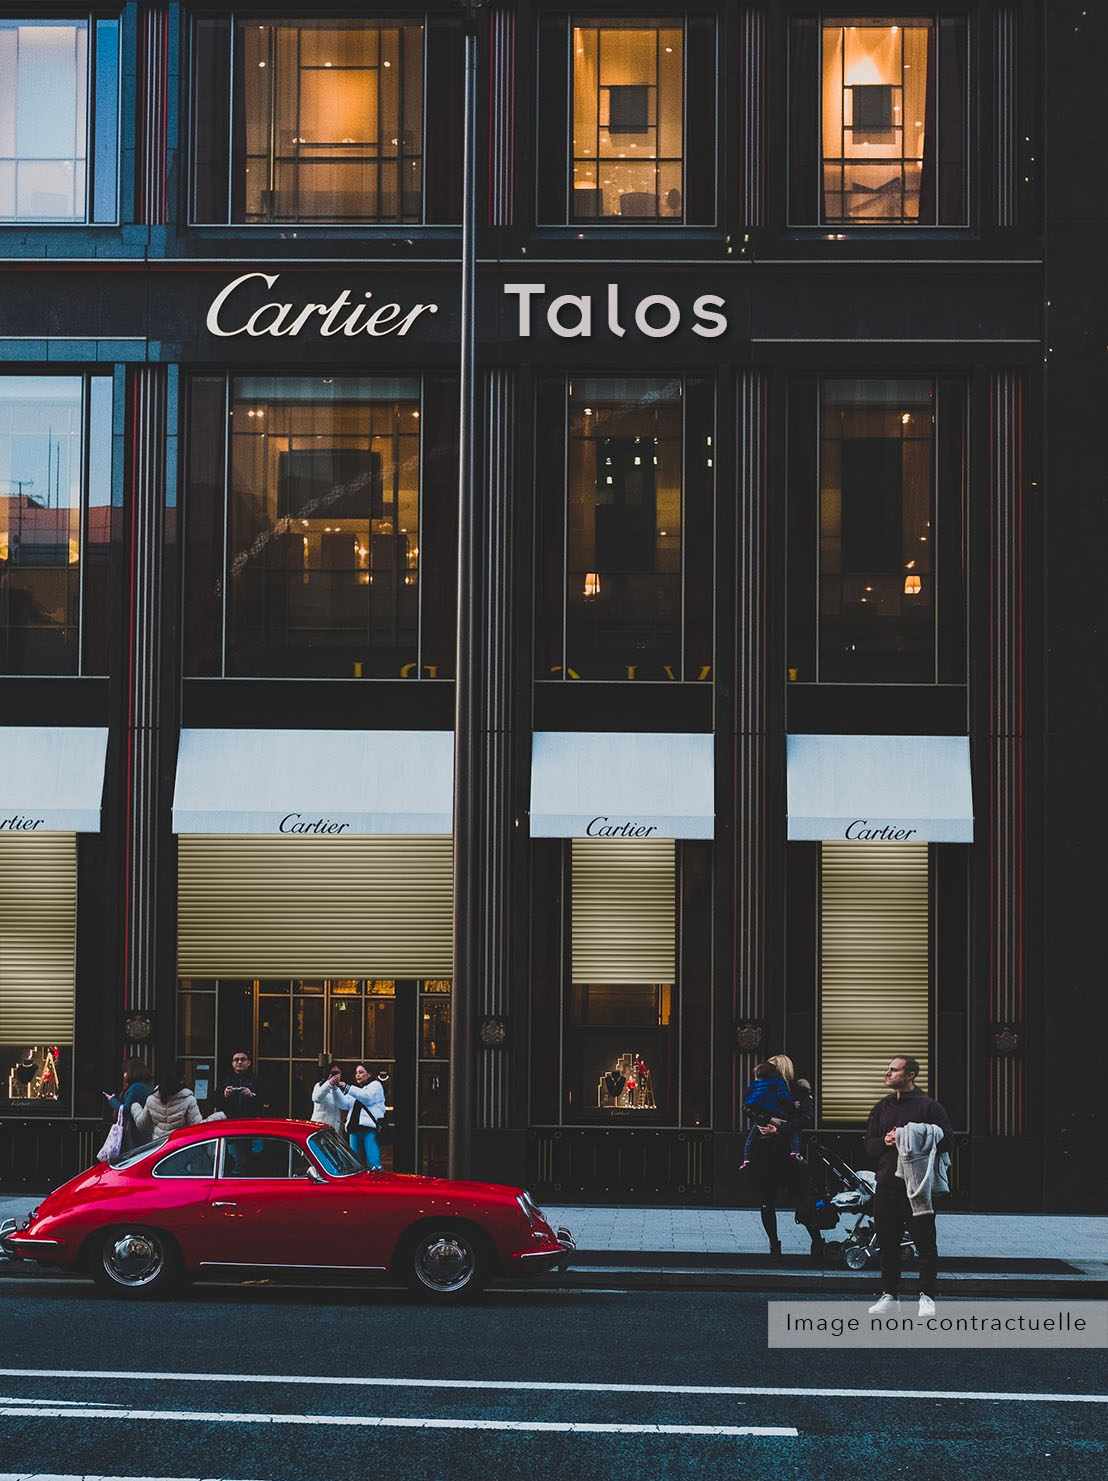 Image non contractuelle de l'intégration de Talos dans un bâtiment de Cartier